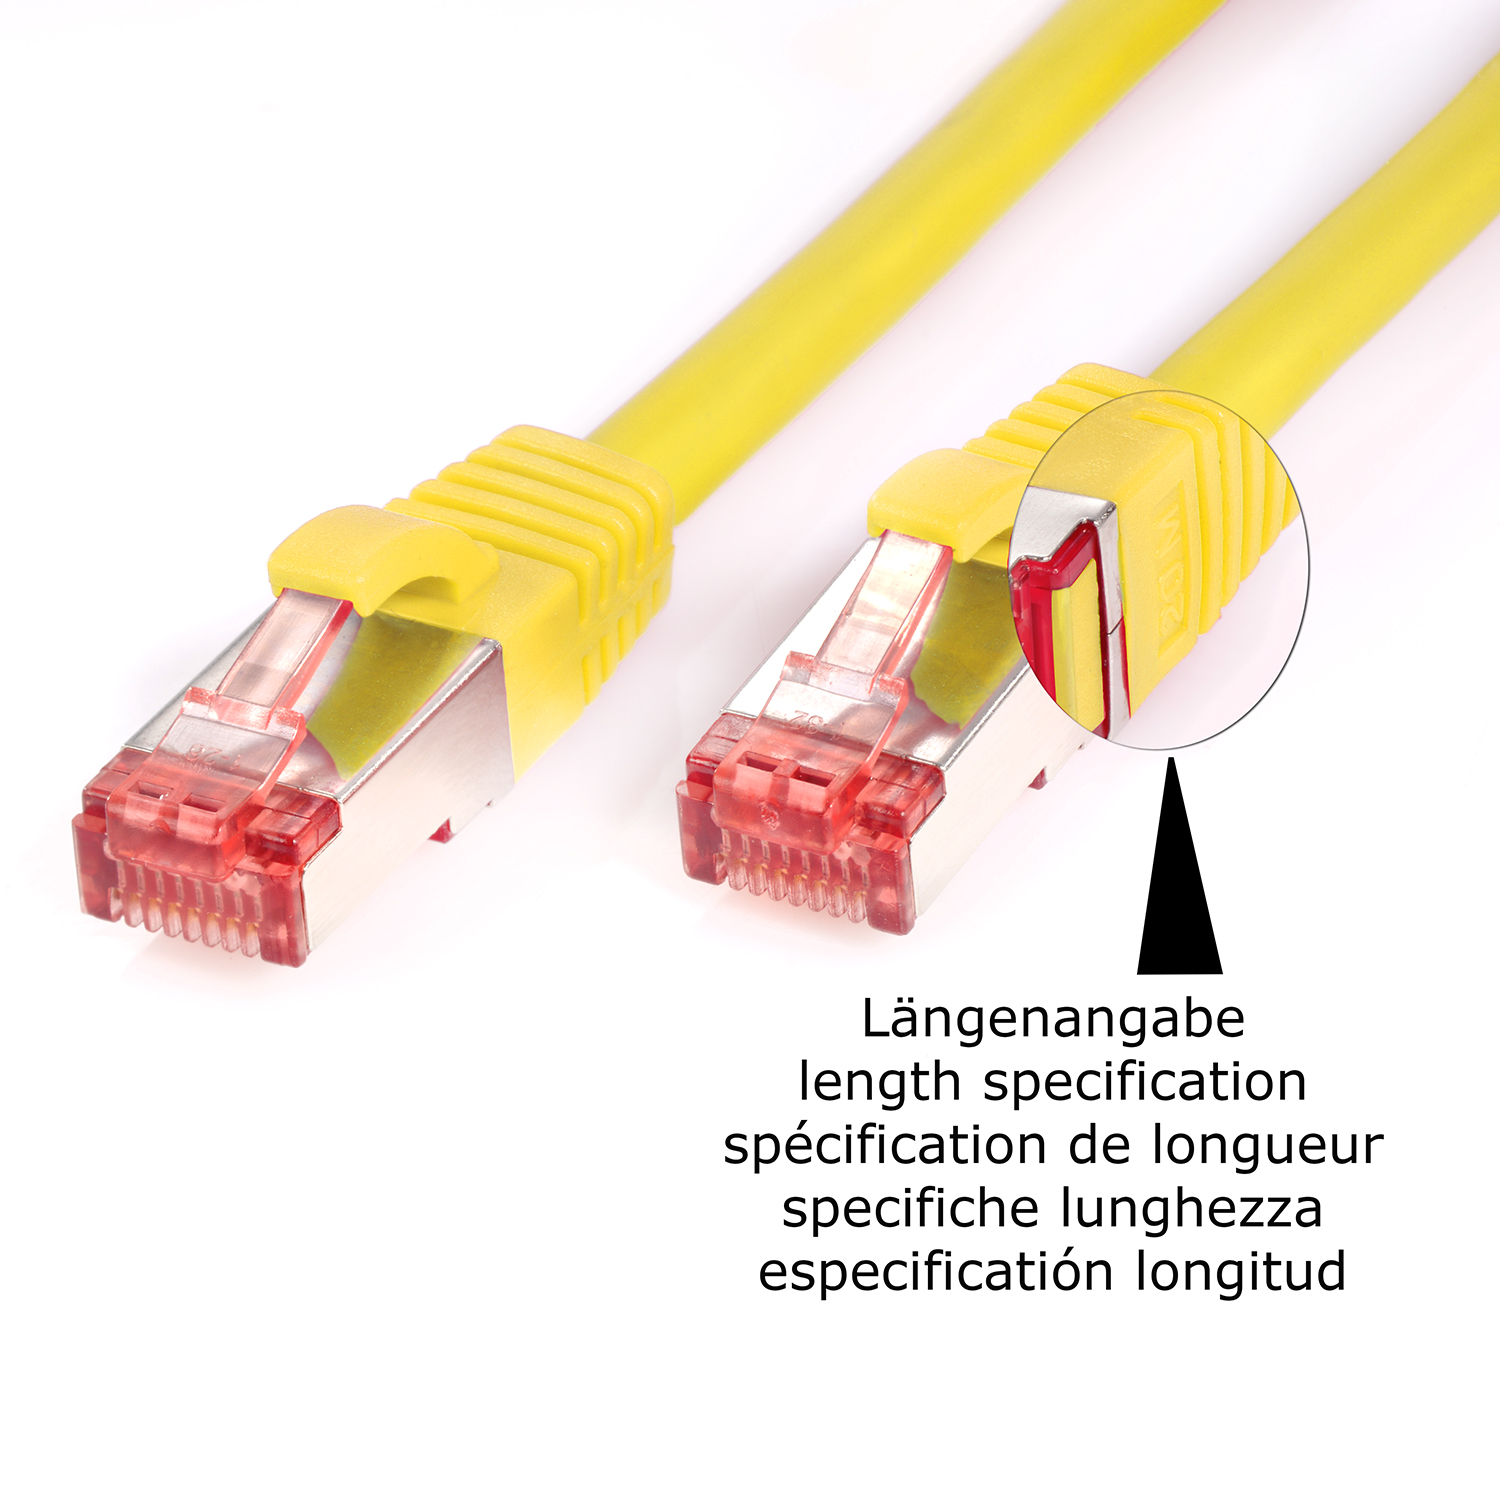 TPFNET 1000Mbit, gelb, 1,5 S/FTP Netzwerkkabel, m Pack / Netzwerkkabel Patchkabel 10er 1,5m